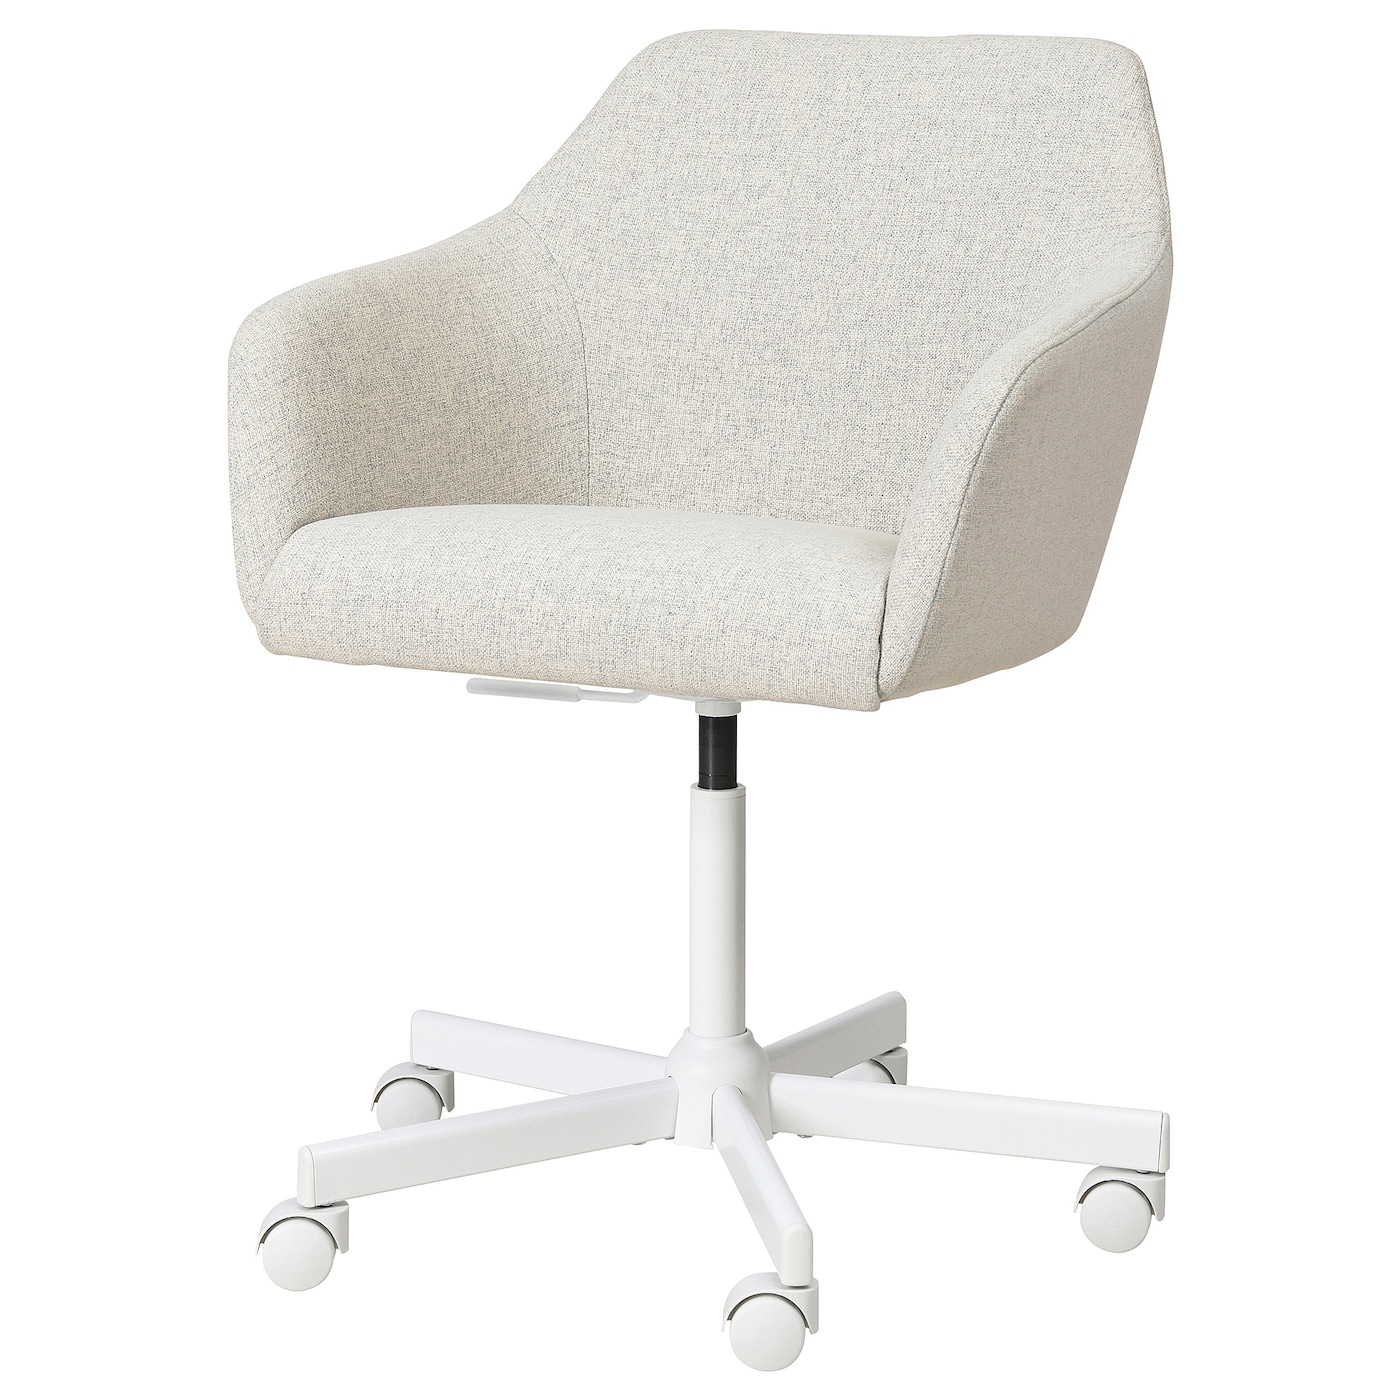 Офисный стул - IKEA TOSSBERG, 67x67x57см, белый, ИКЕА ТОССБЕРГ